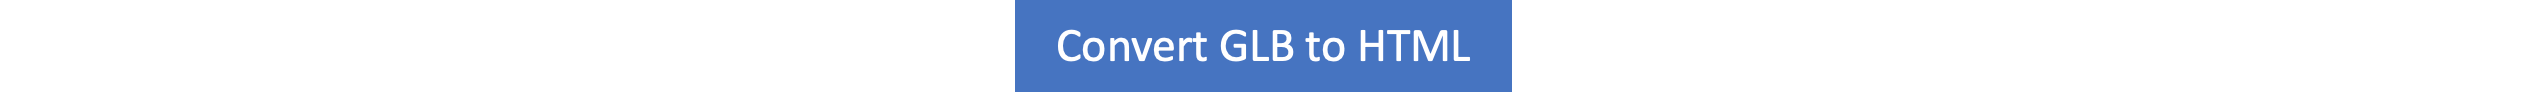 GLB’den HTML’ye